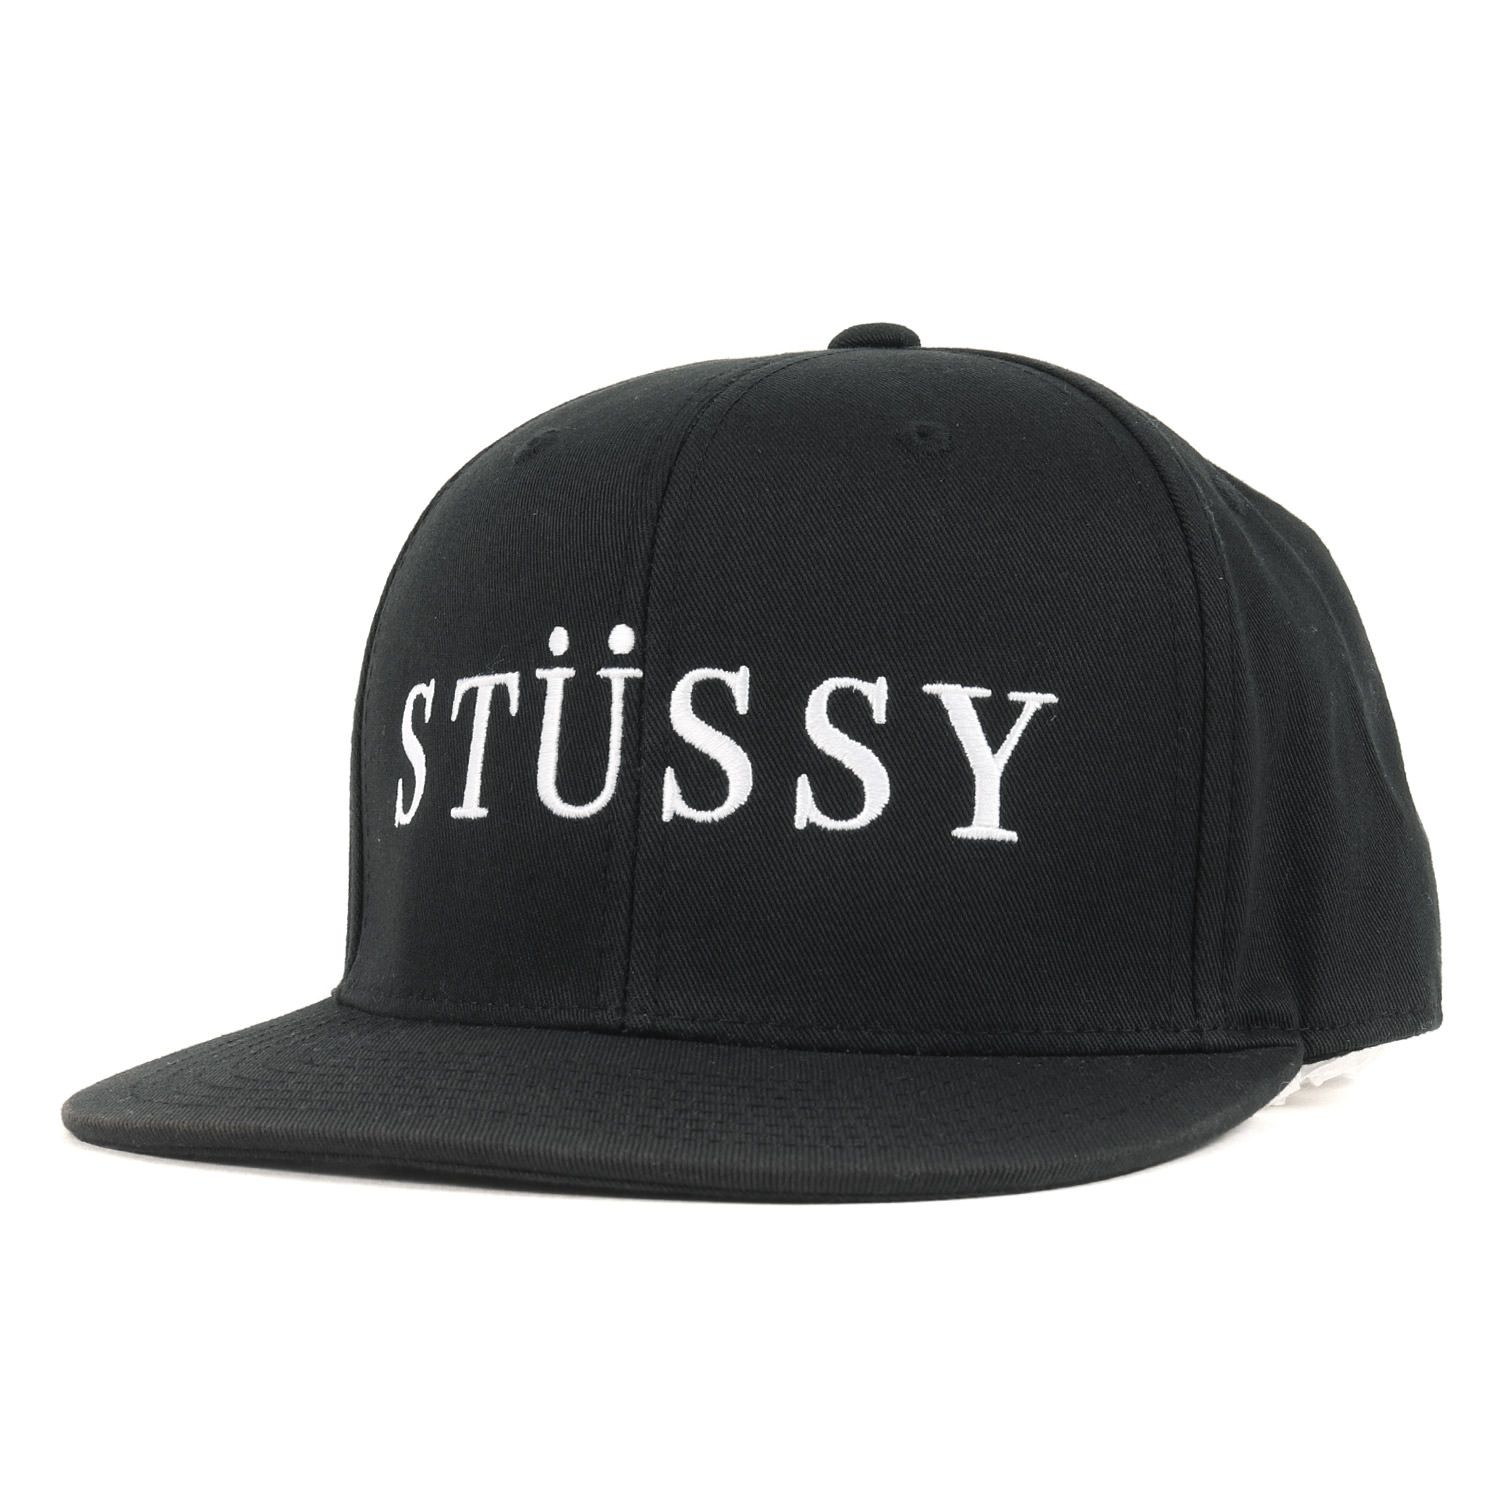 STUSSY ステューシー キャップ サイズ:7 3/8(58.7cm) ブランドロゴ 